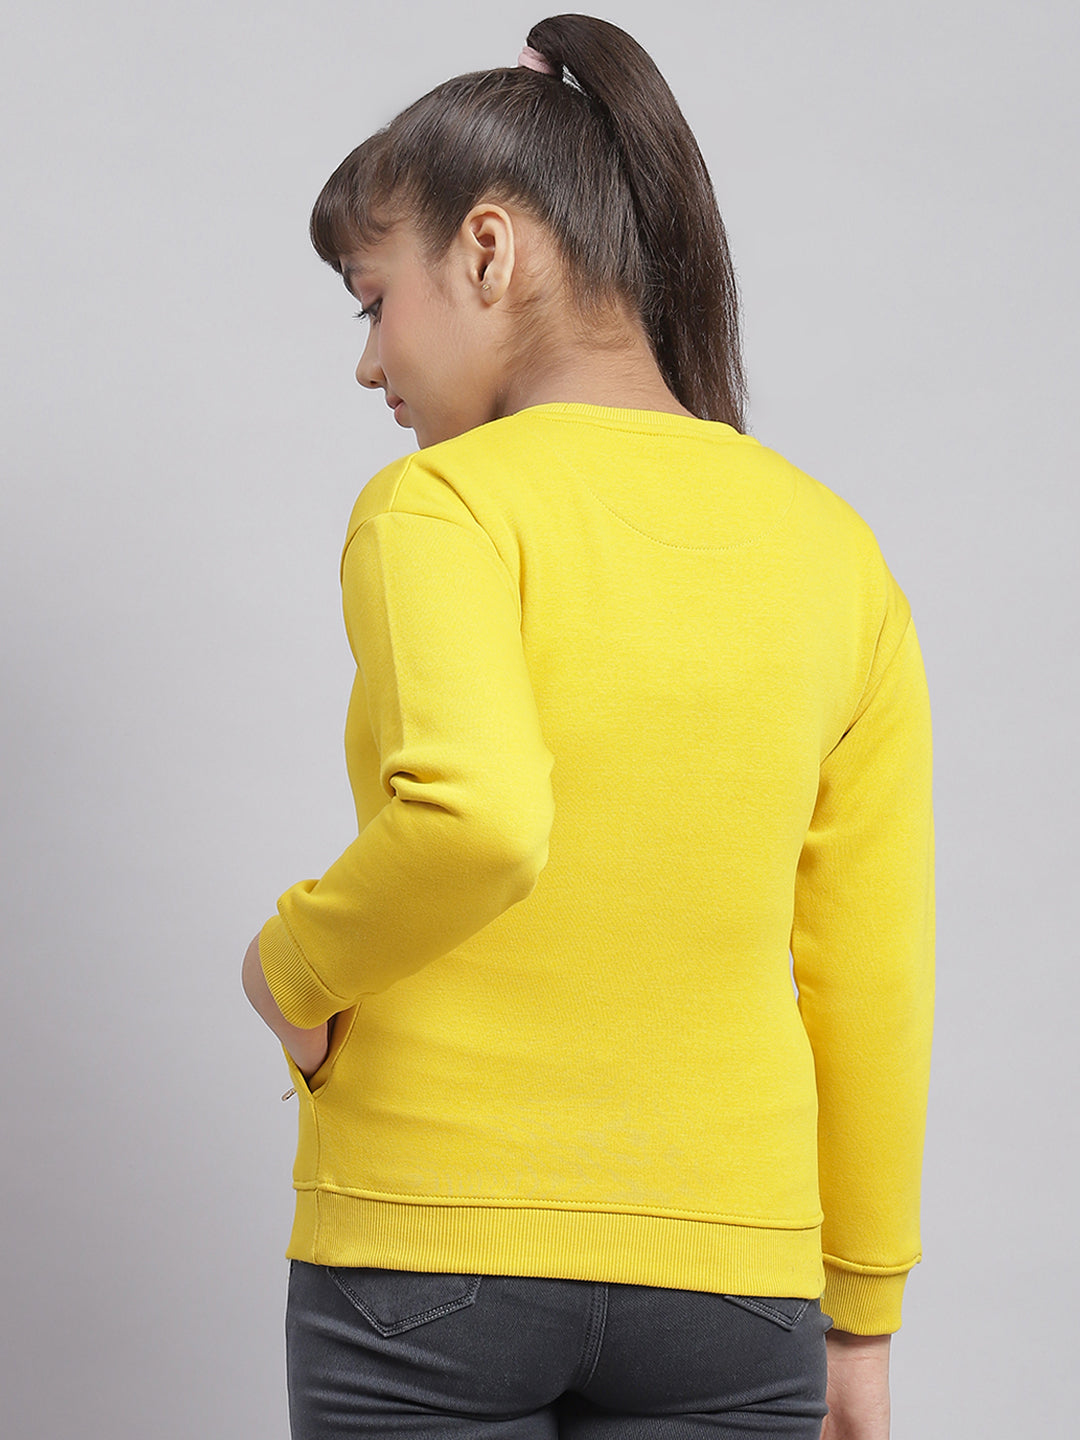 Girls Yellow Printed Round Neck Full Sleeve Sweatshirt